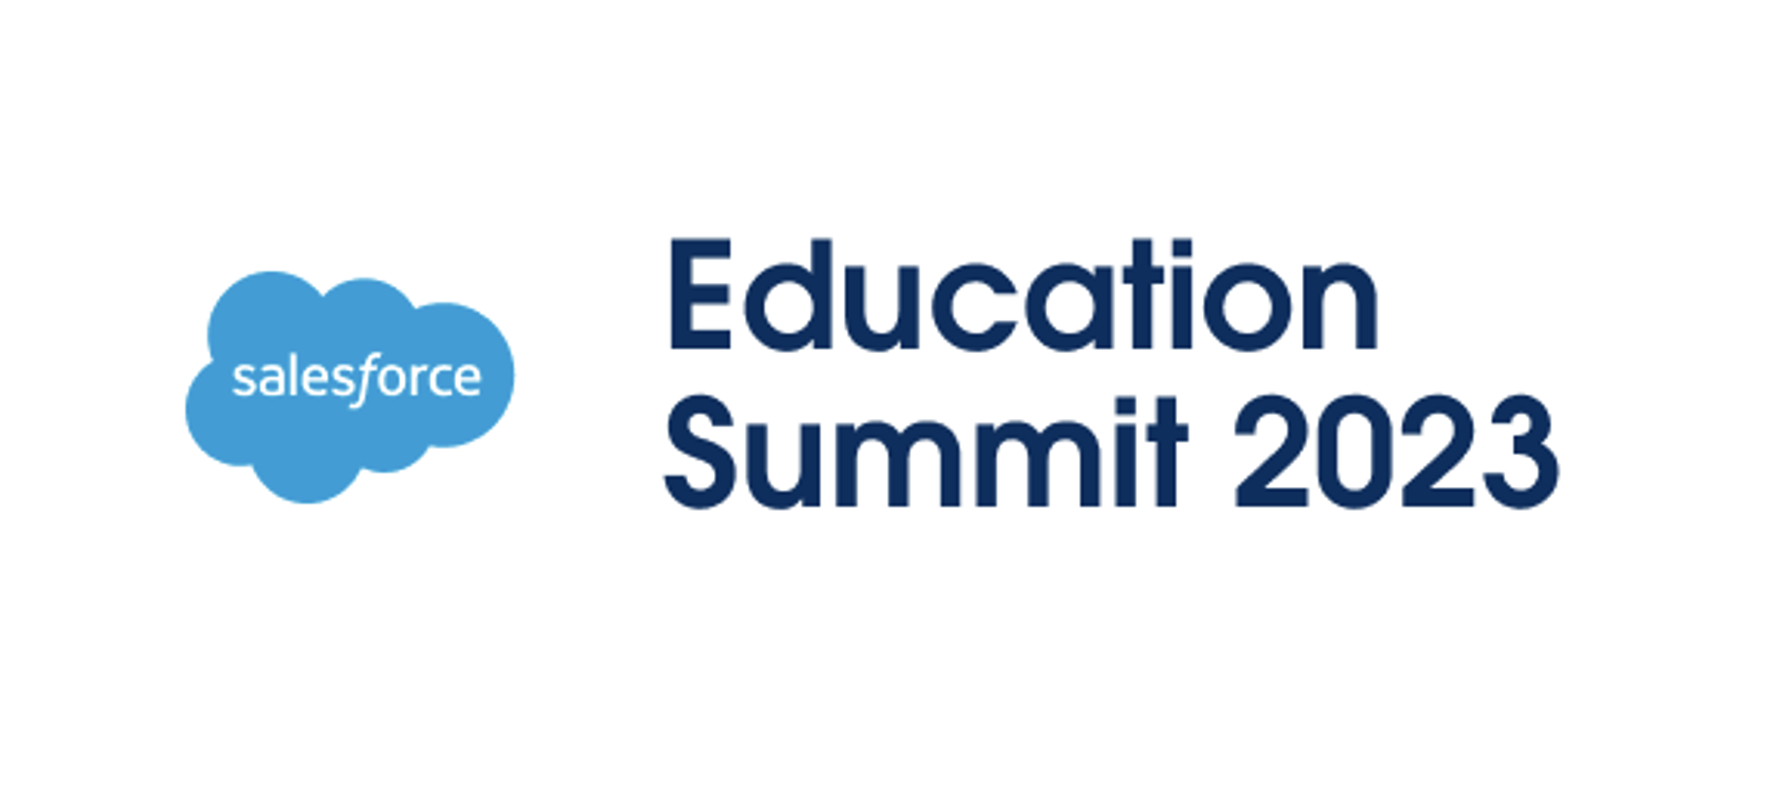 Salesforce Education Summit 2023 Liaison